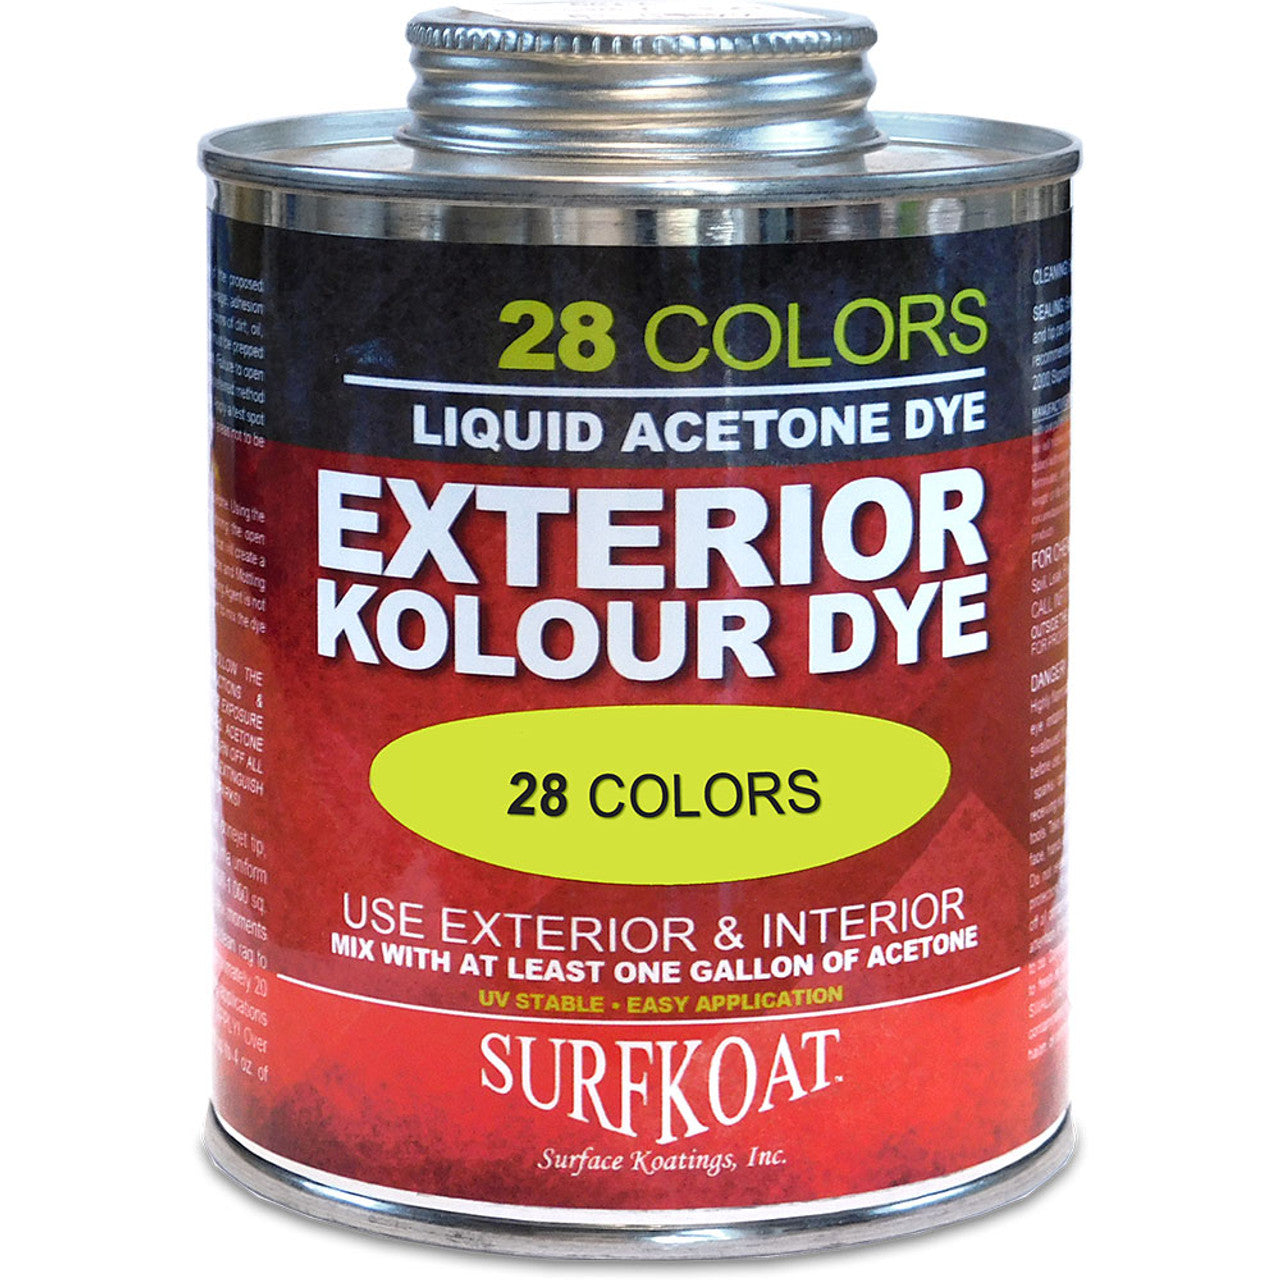 Kolour Dye (Saddle Brown) 1 Gallon Concentrate